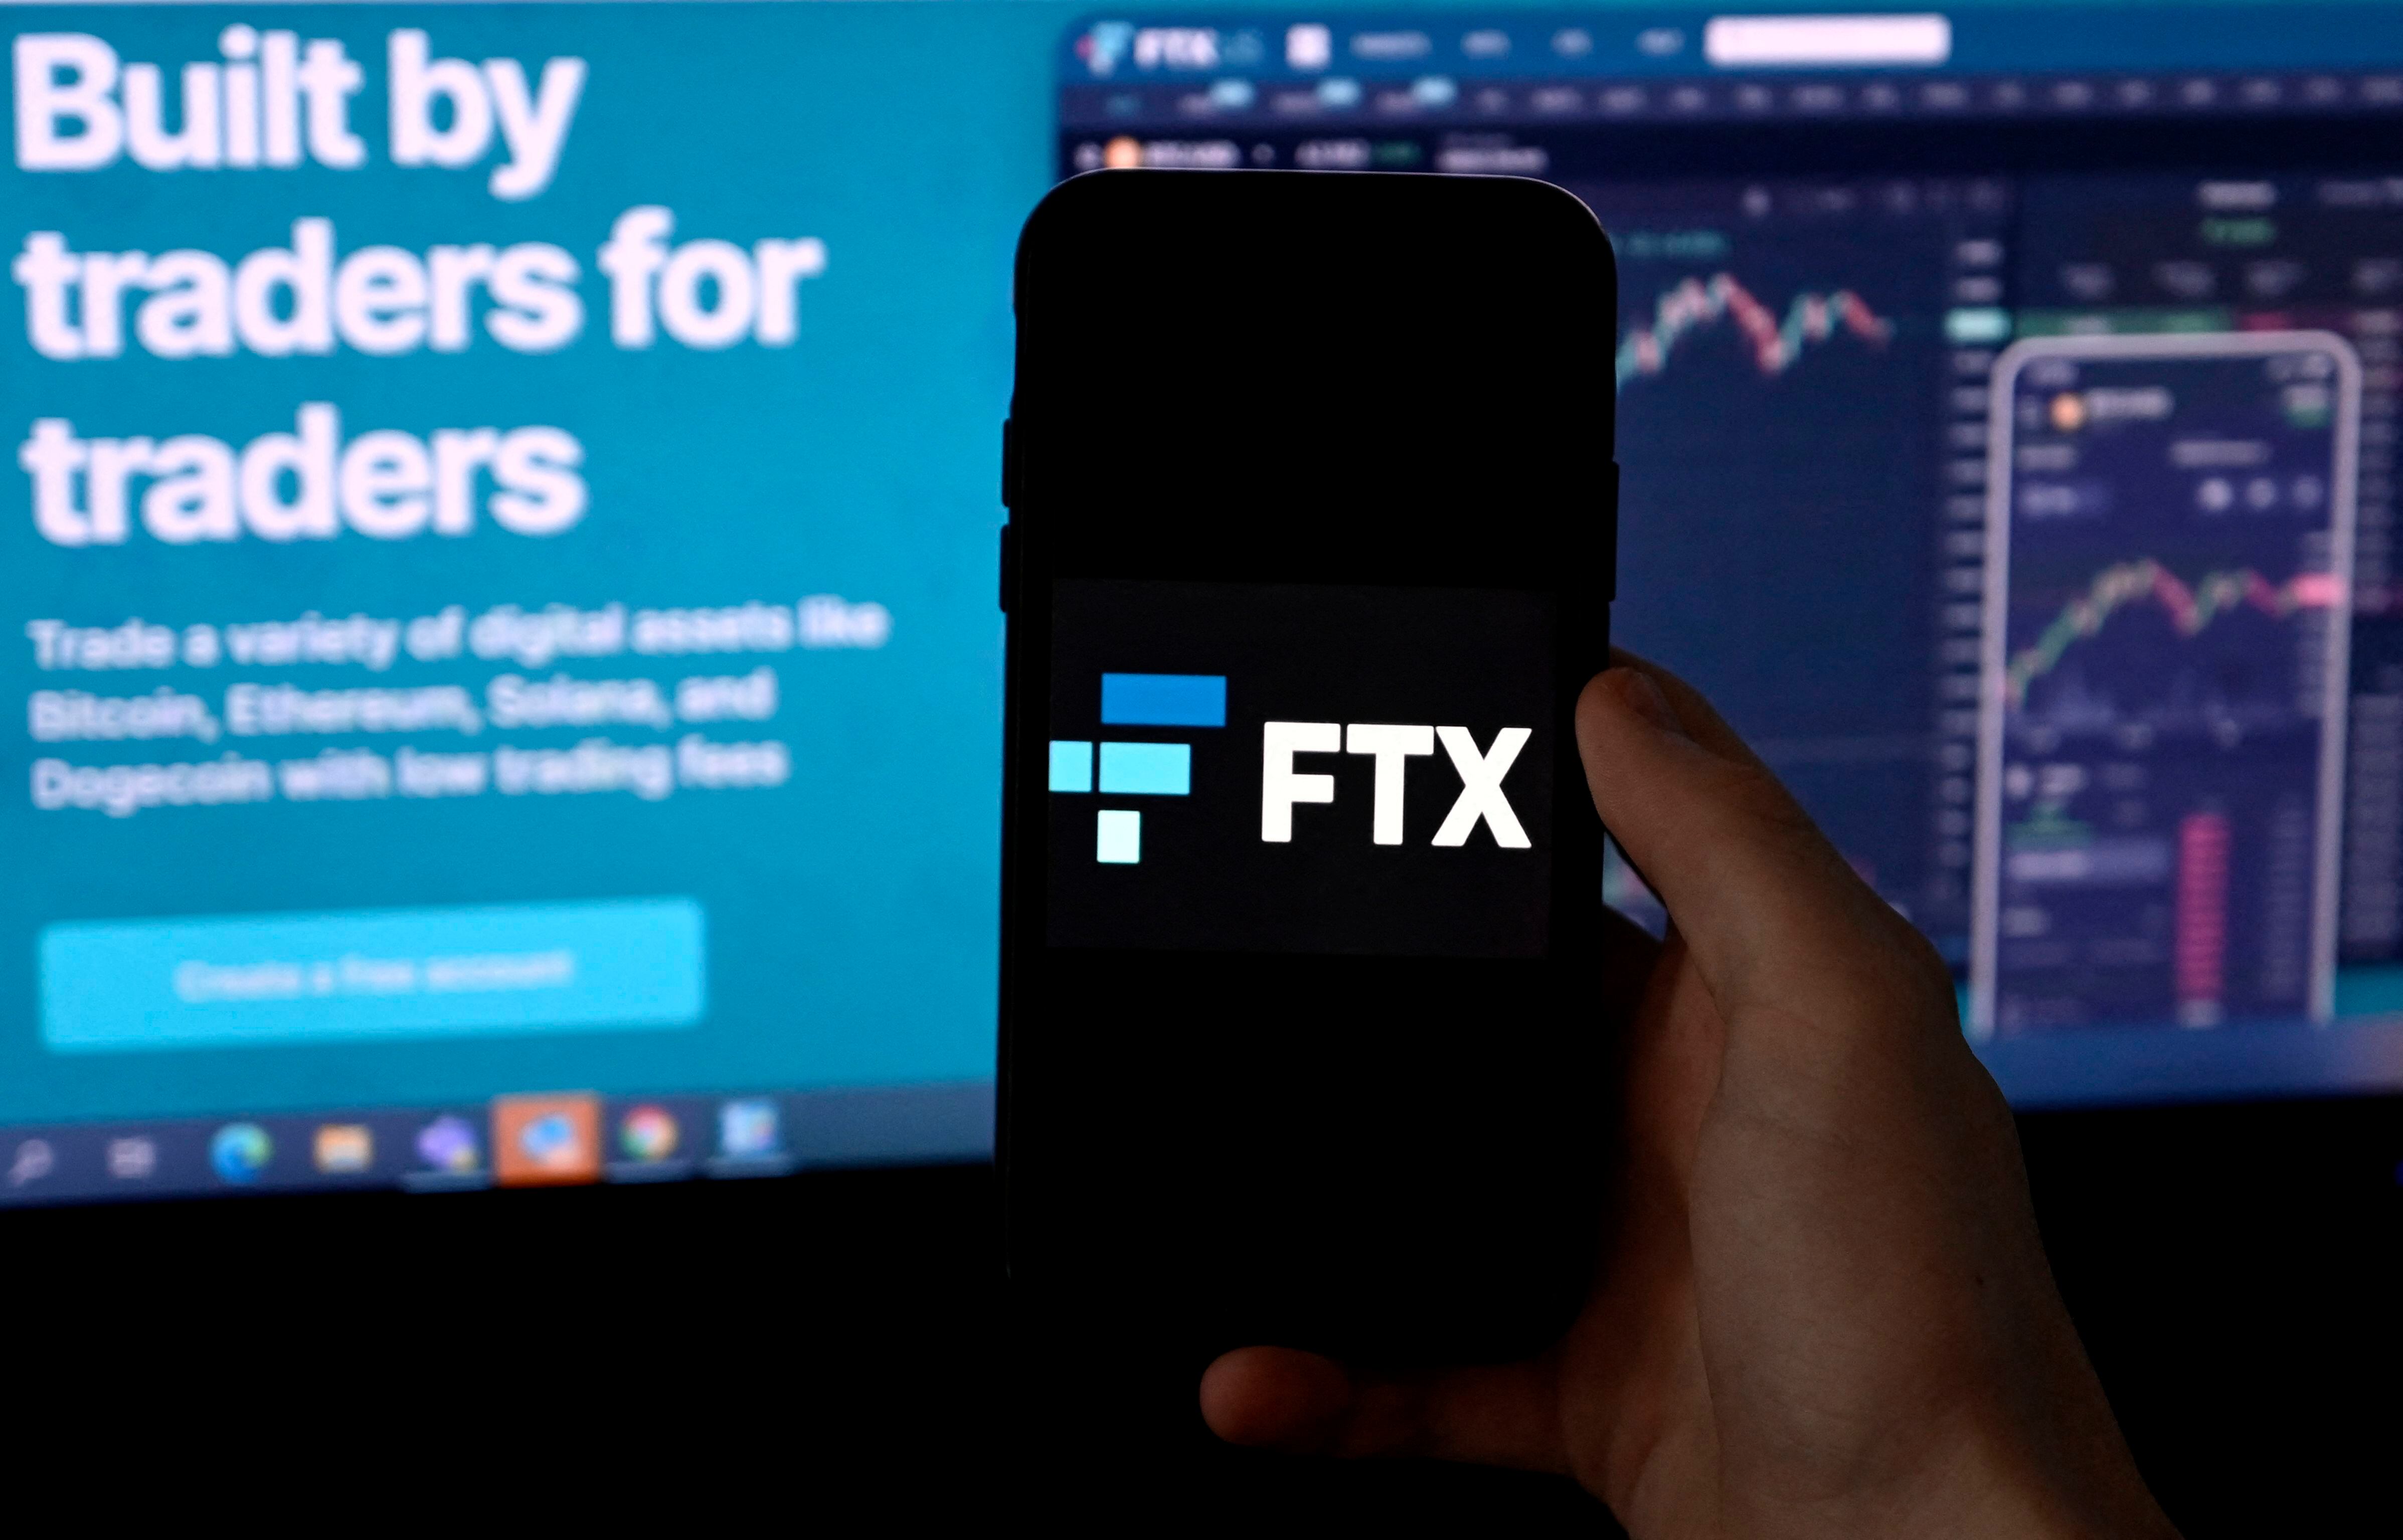 Multimillonario antes de los 30 años, Sam Bankman-Fried conquistó el mundo de las criptomonedas a una velocidad vertiginosa, convirtiendo FTX, una pequeña start-up que cofundó en 2019, en la segunda plataforma de intercambio más grande del mundo. (Foto: AFP).